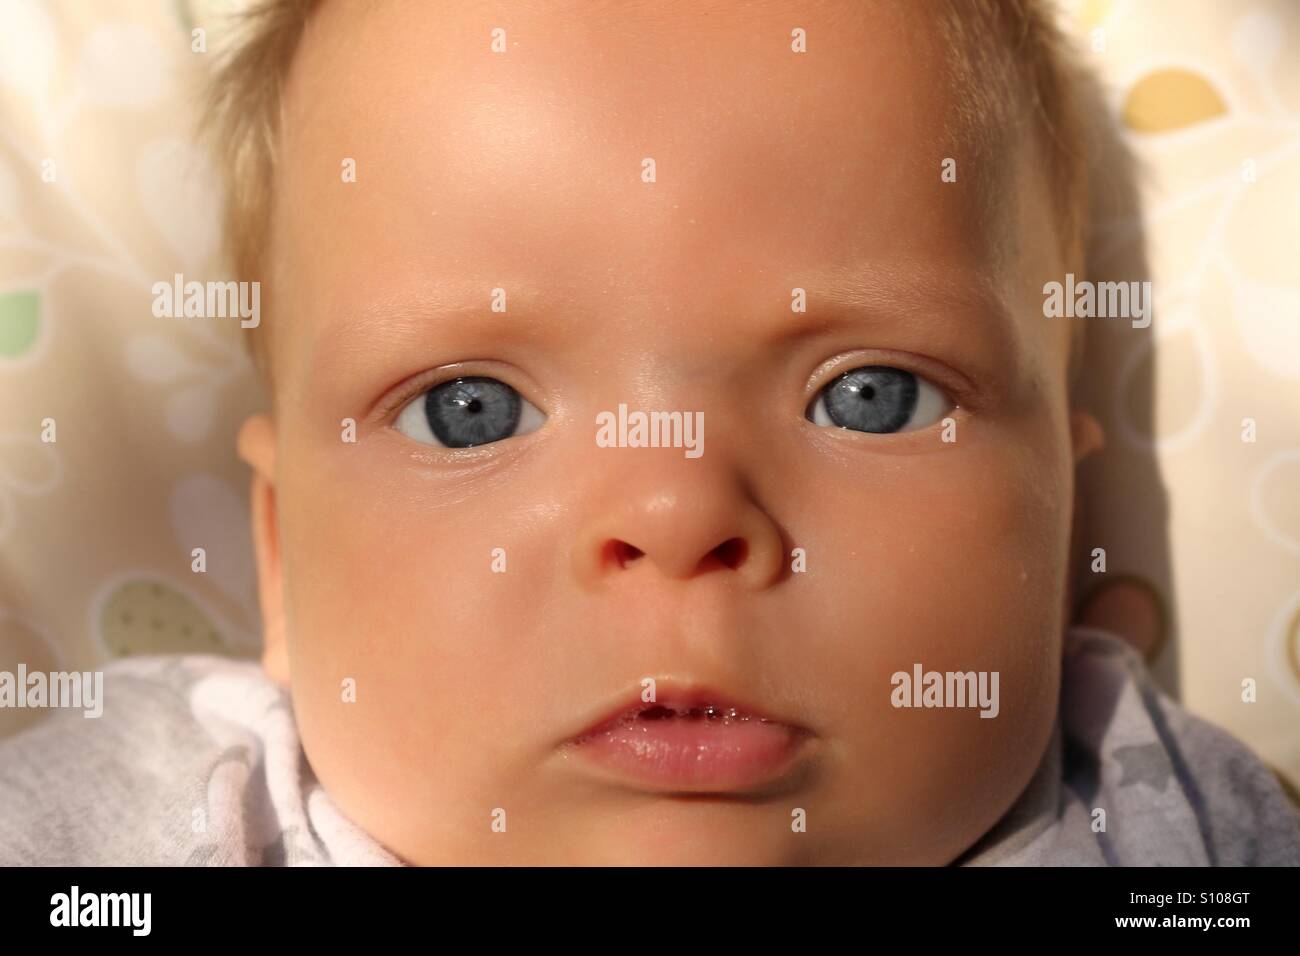 Niedliche Baby junge mit blauen Augen in die Kamera schaut Stockfoto